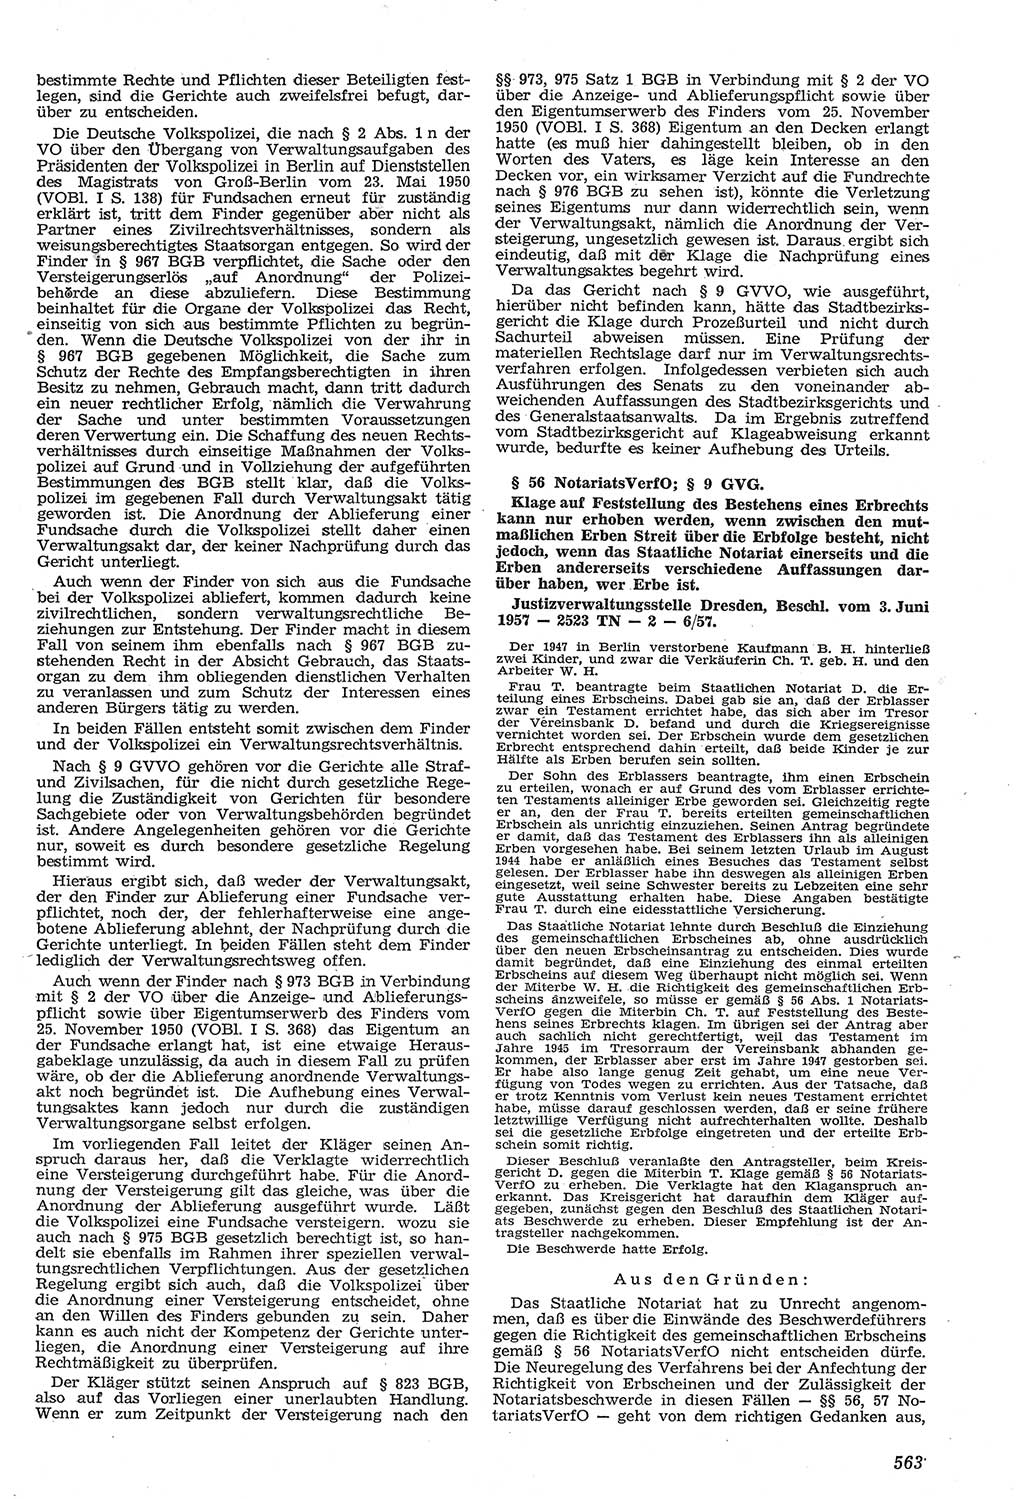 Neue Justiz (NJ), Zeitschrift für Recht und Rechtswissenschaft [Deutsche Demokratische Republik (DDR)], 11. Jahrgang 1957, Seite 563 (NJ DDR 1957, S. 563)